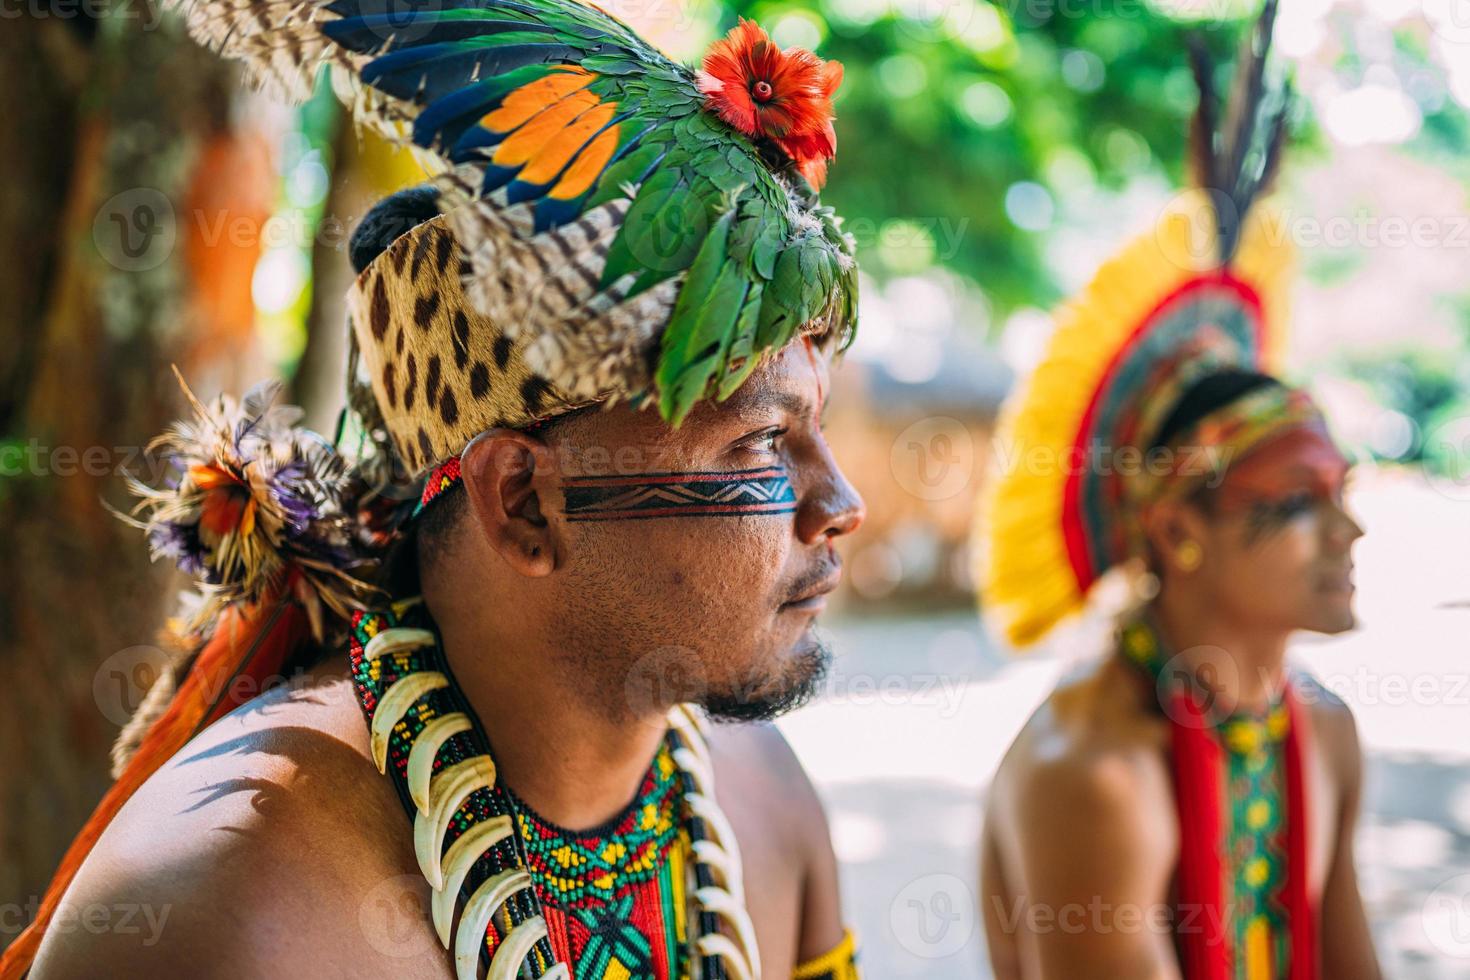 chef de la tribu pataxo. indien brésilien avec coiffe de plumes, collier et peintures faciales traditionnelles regardant vers la droite photo